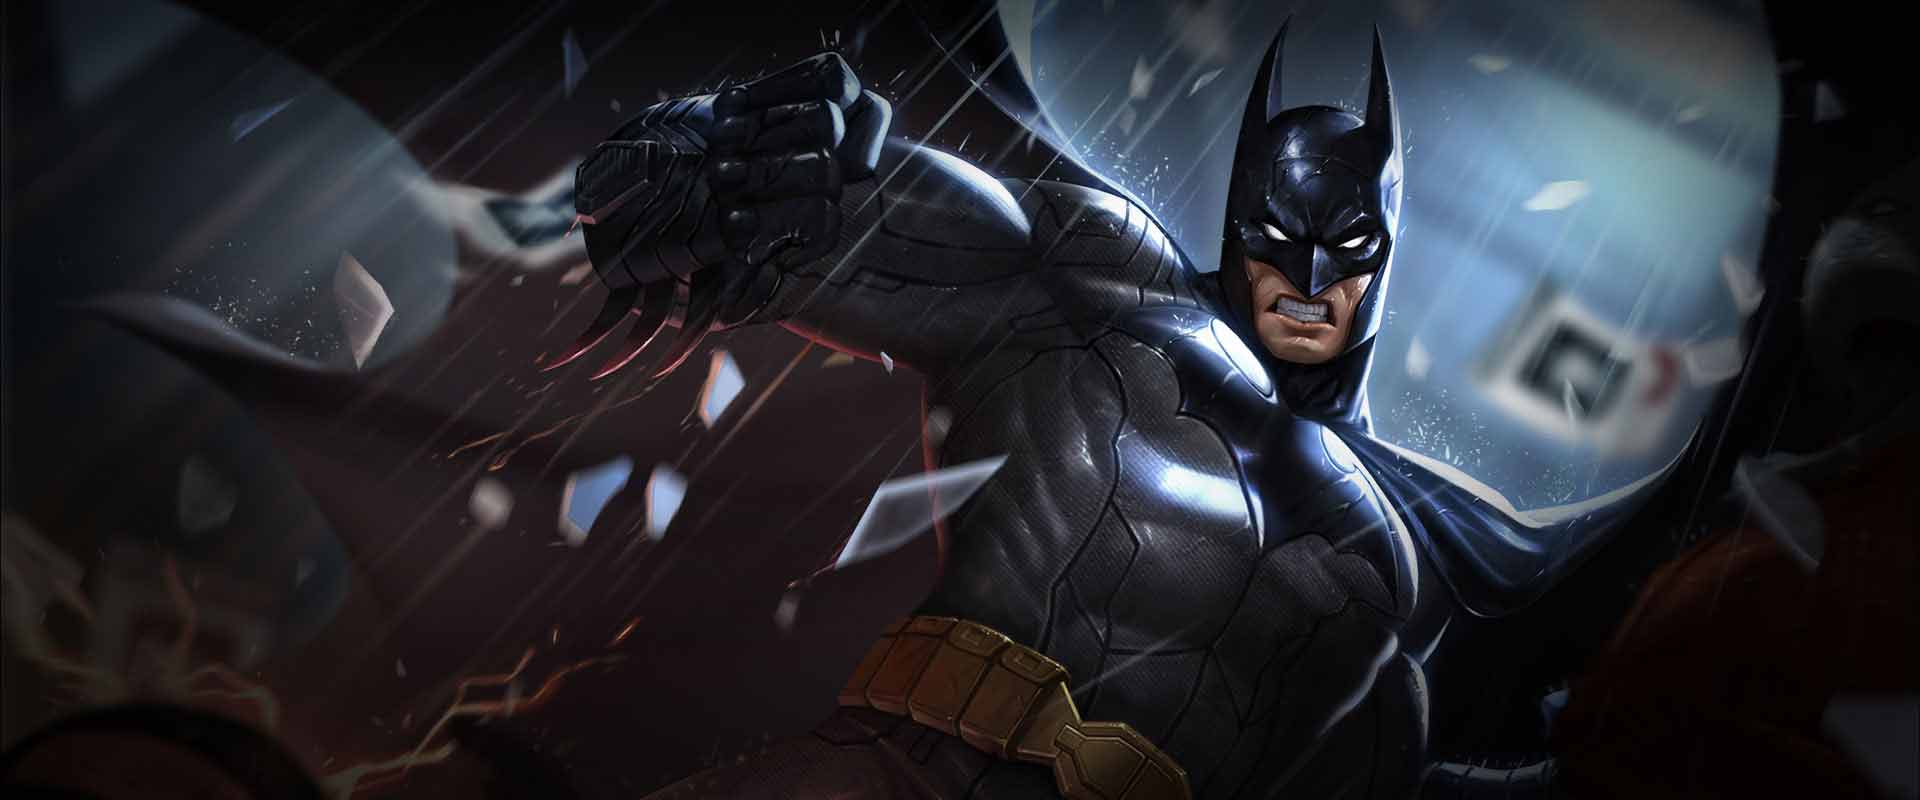 Khám phá ngay ảnh Batman Liên Quân hấp dẫn nhất với đủ các phiên bản đẹp mắt, cùng Batman và các siêu anh hùng chiến đấu chống lại giặc địch.